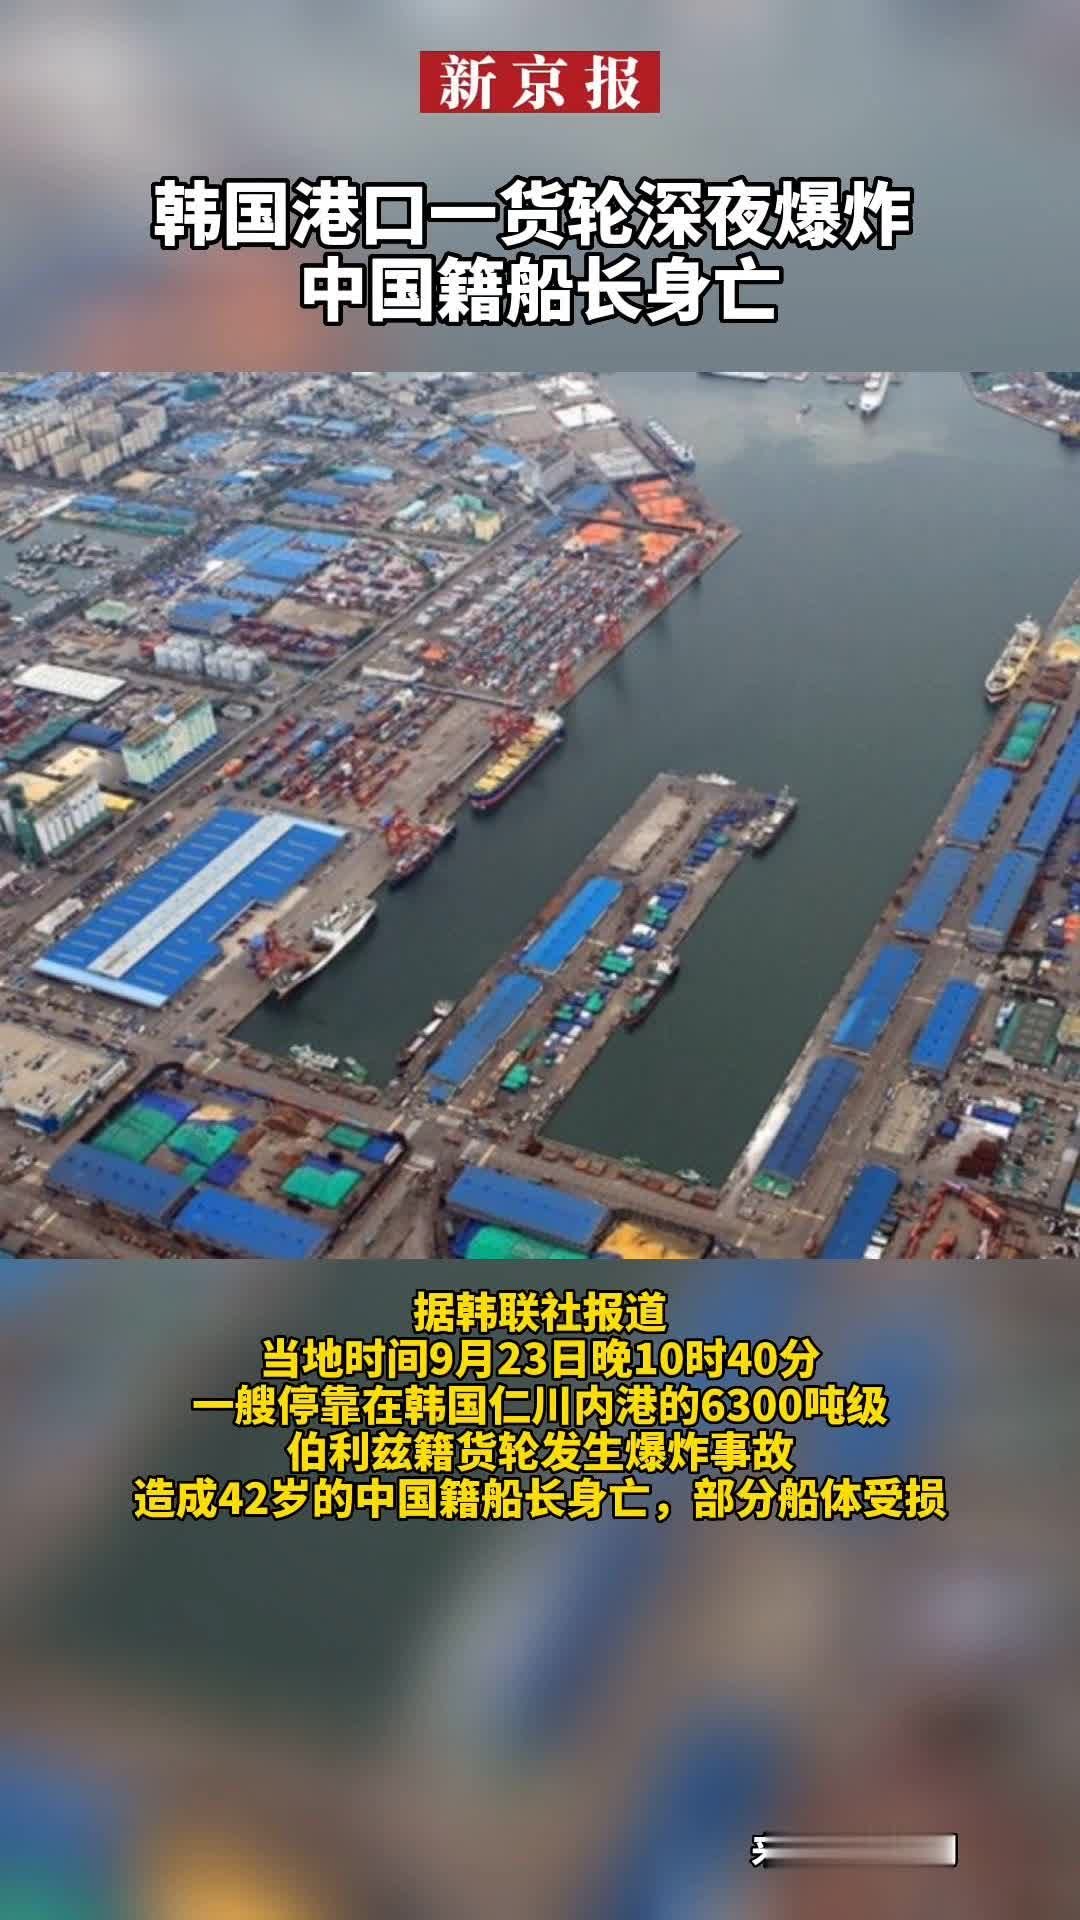 #韩国港口一货轮深夜爆炸、中国籍船长身亡